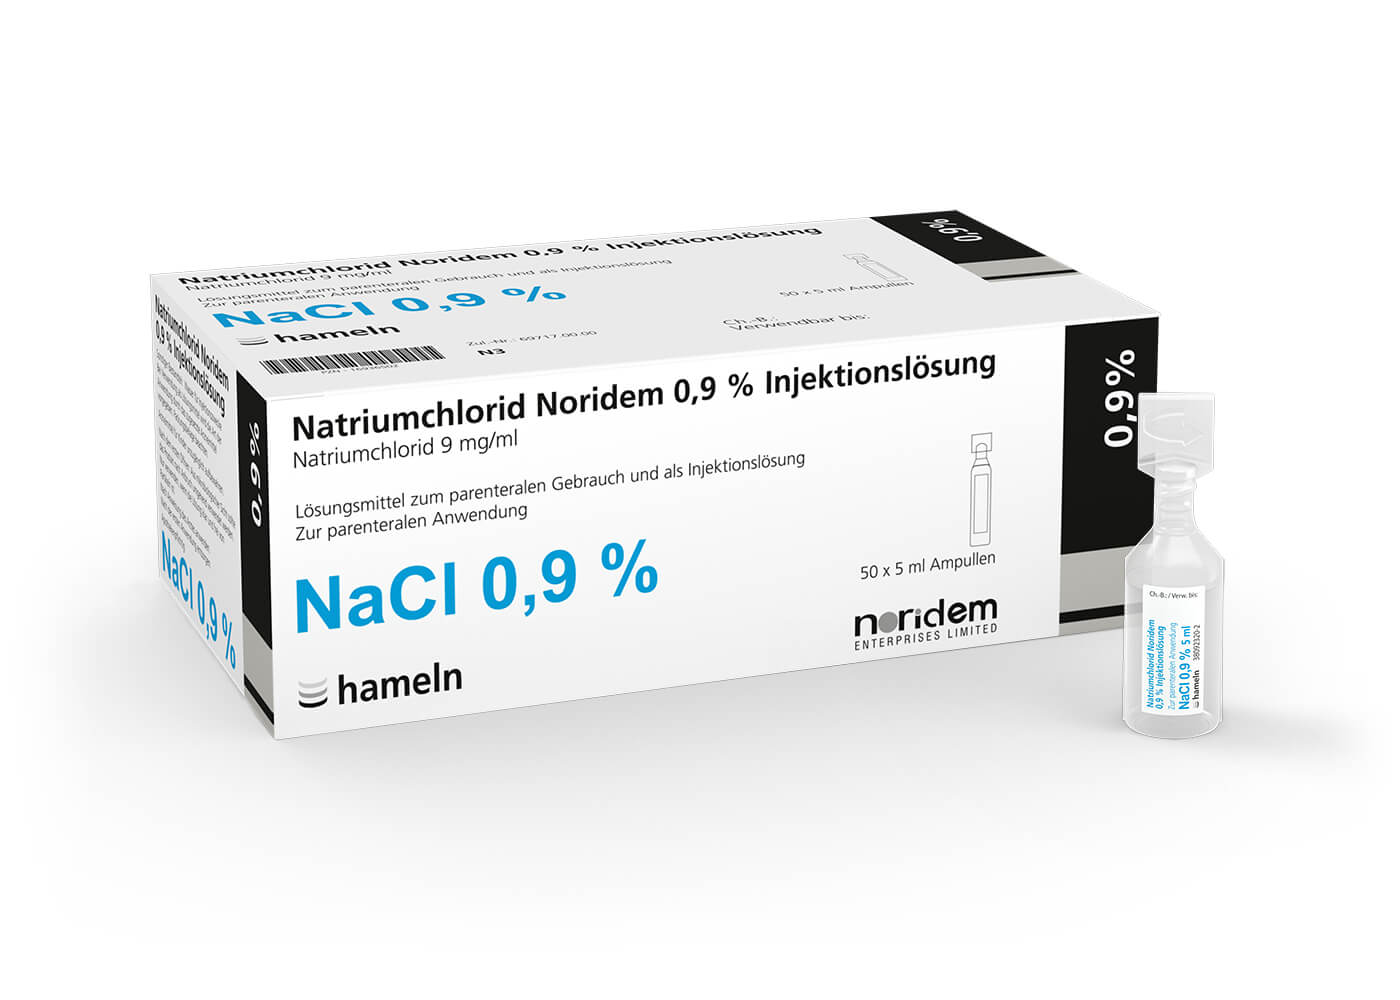 NaCl_Noridem_DE_0-9pc_in_5_ml_Pack_50St_2021-02-26